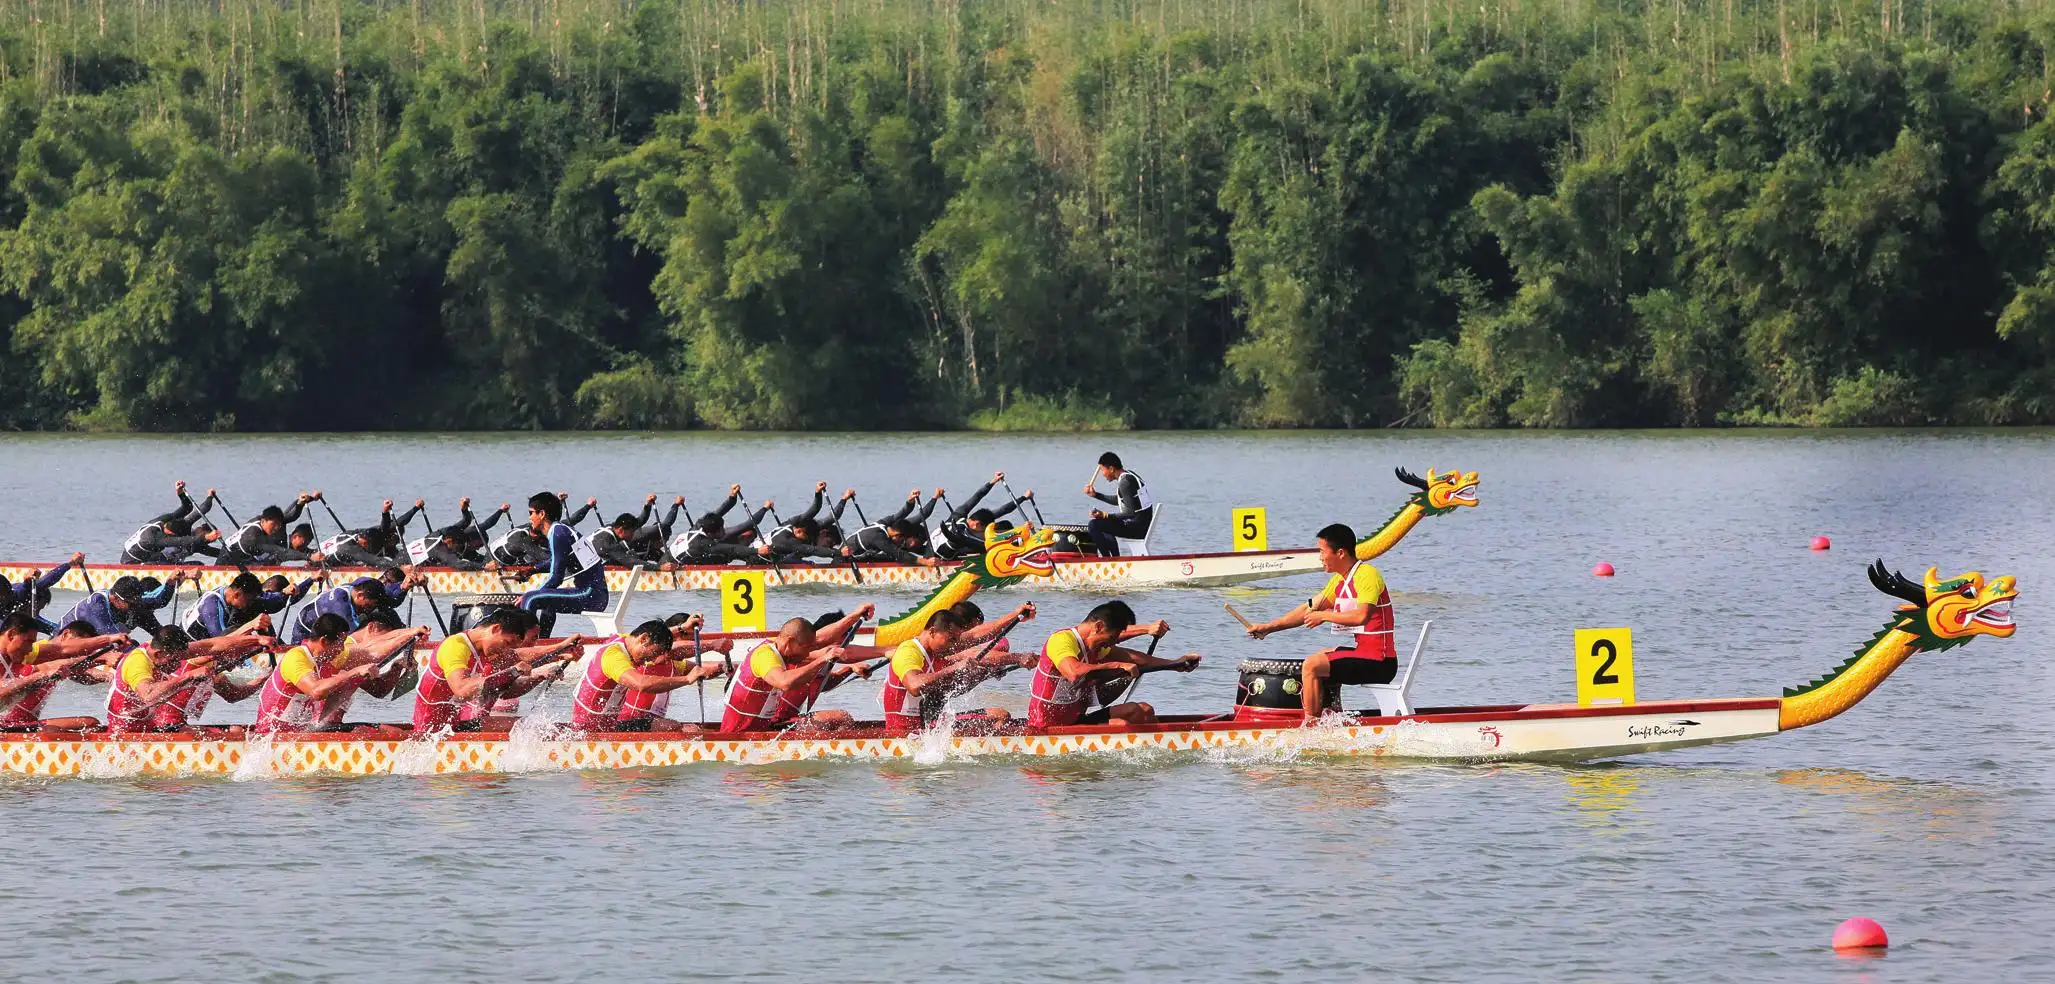 Dragon boat racing, 赛龙舟, sai long zhou